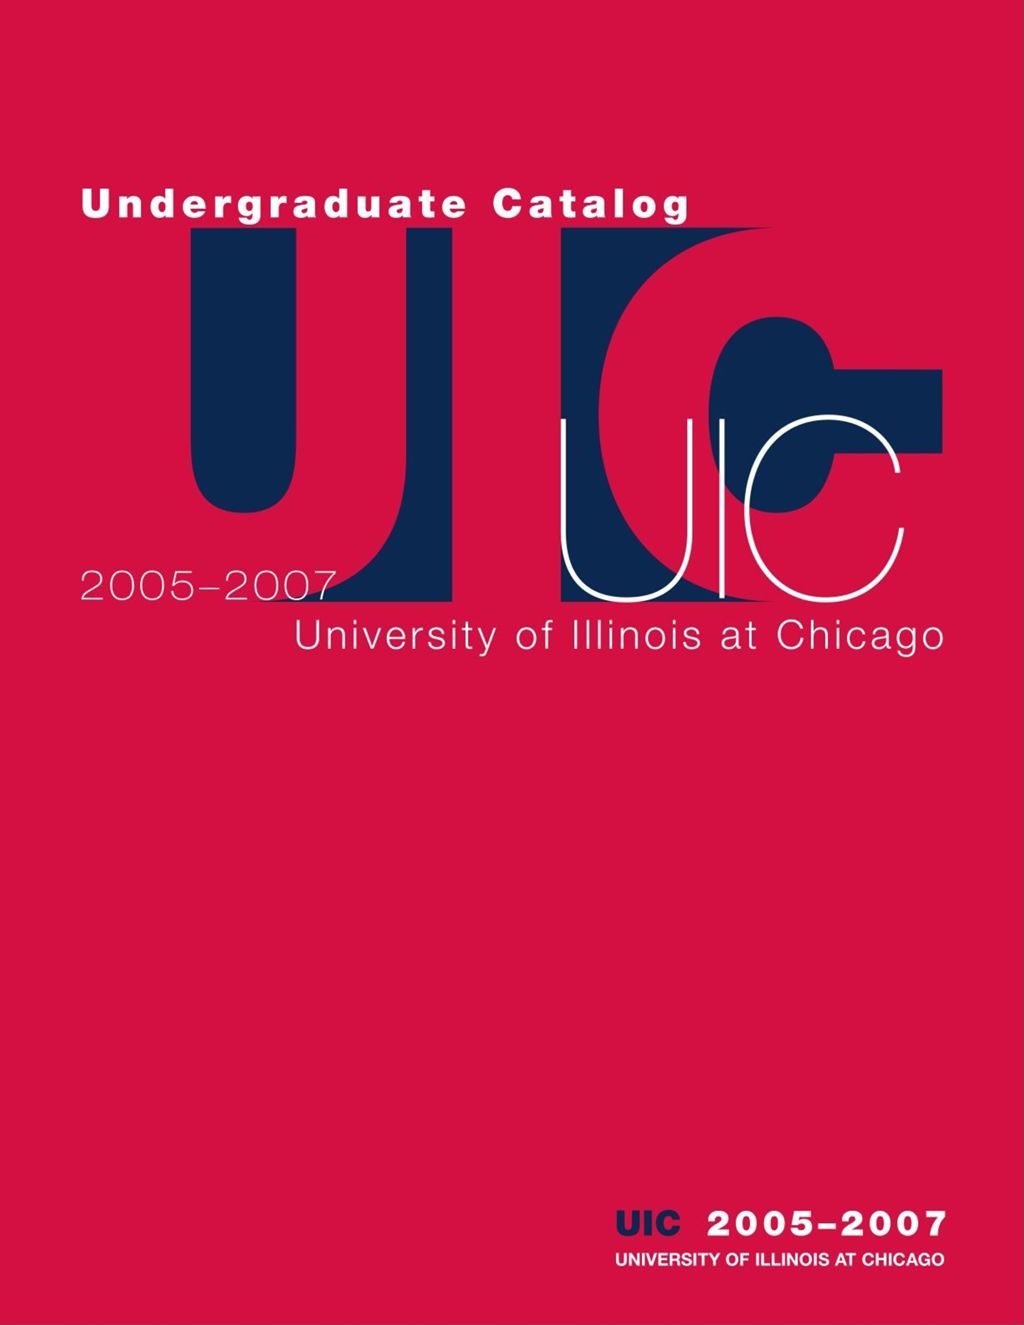 Undergraduate Catalog, 2005-2007